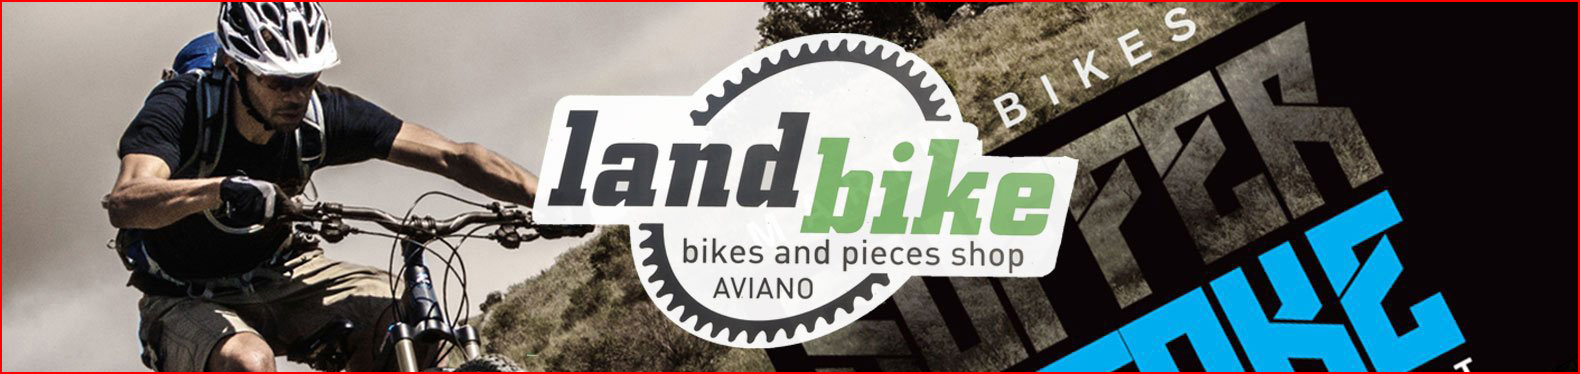 landbike bikes aviano